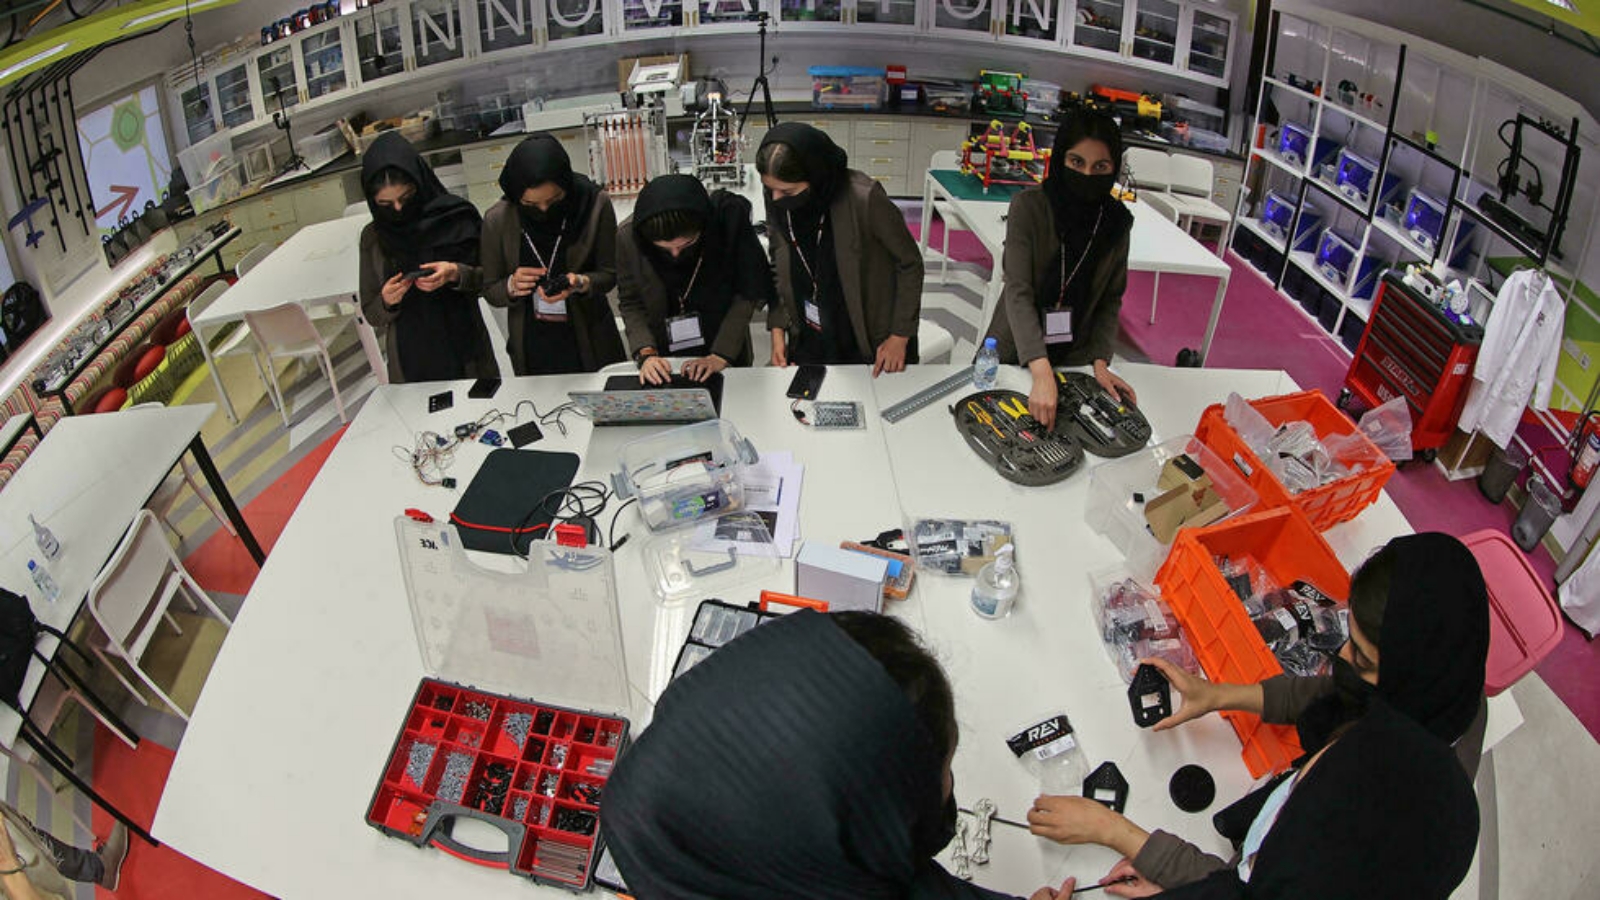 أعضاء من فريق الروبوتات الأفغاني الذي يتكون بالكامل من فتيات يجمعن مكونات لوحة دوائر كهربائية يبنونها في مختبر جامعة تكساس إيه آند إم في العاصمة الدوحة.